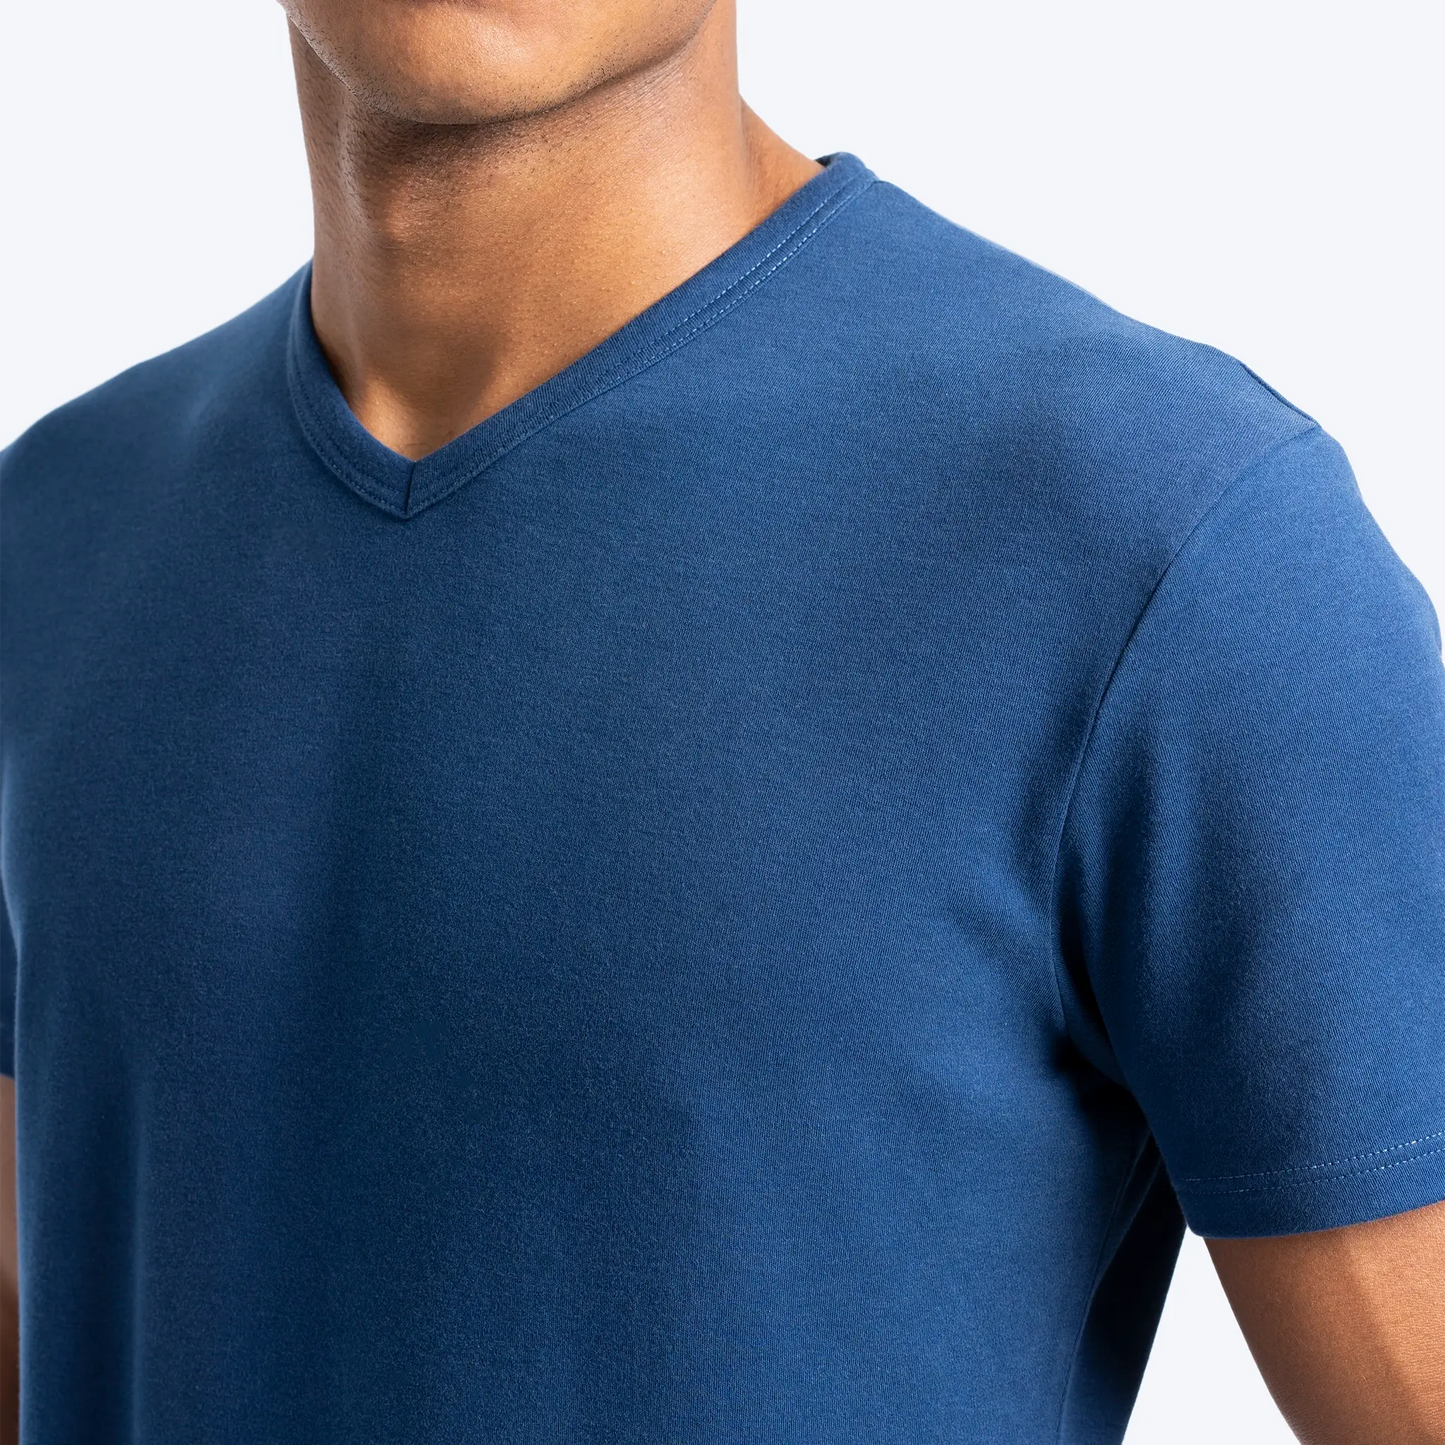 mens biodegradable tshirt vneck color natural blue